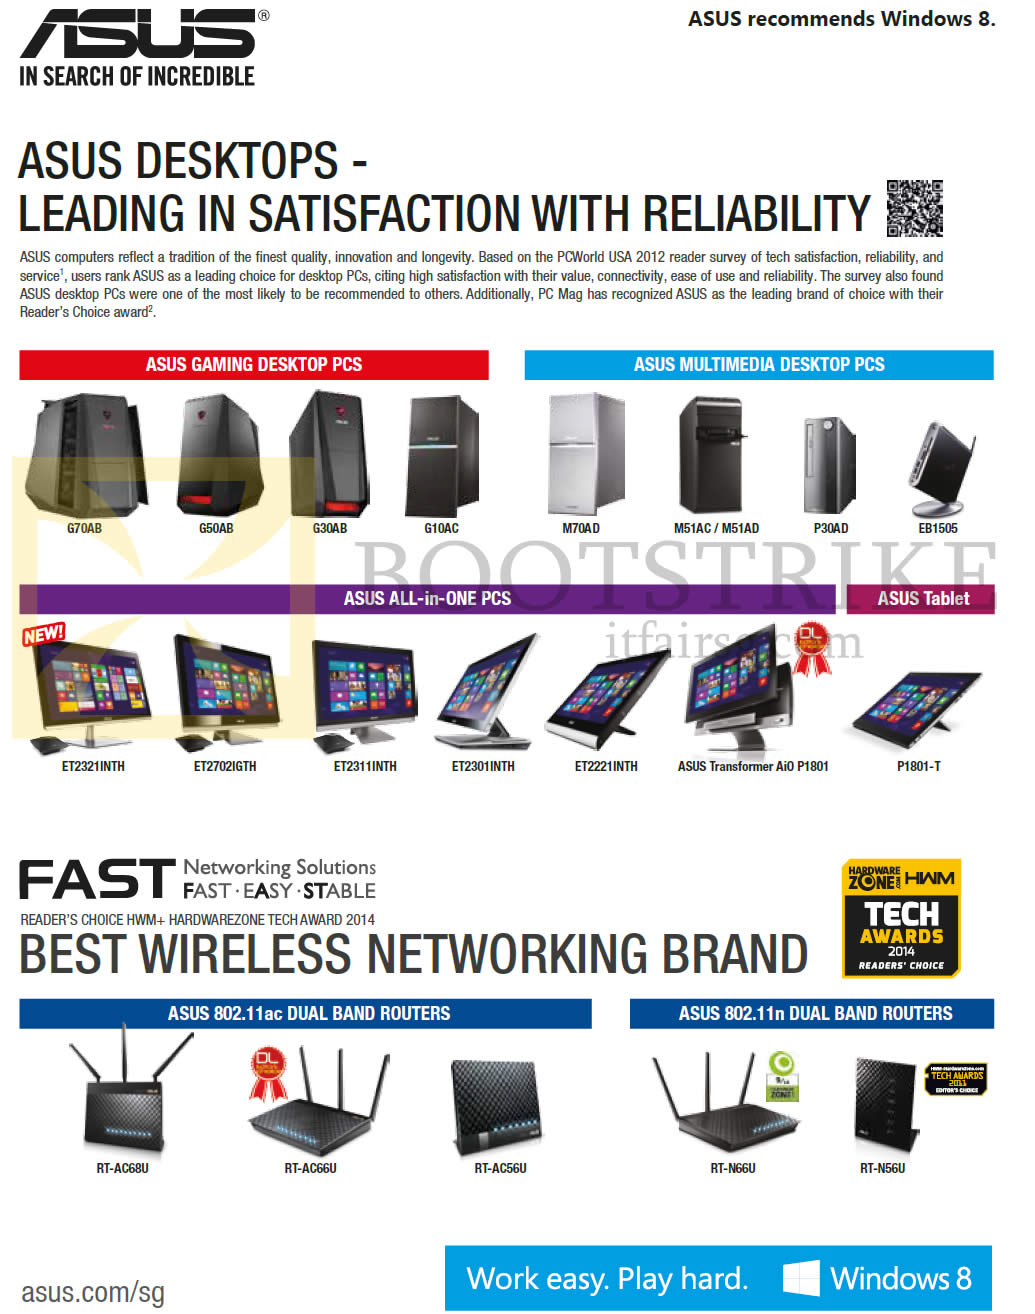 IT SHOW 2014 price list image brochure of ASUS Desktop PCs, Gaming, Tablets, AIO Desktop PCs, Multimedia Desktop PCs, Routers